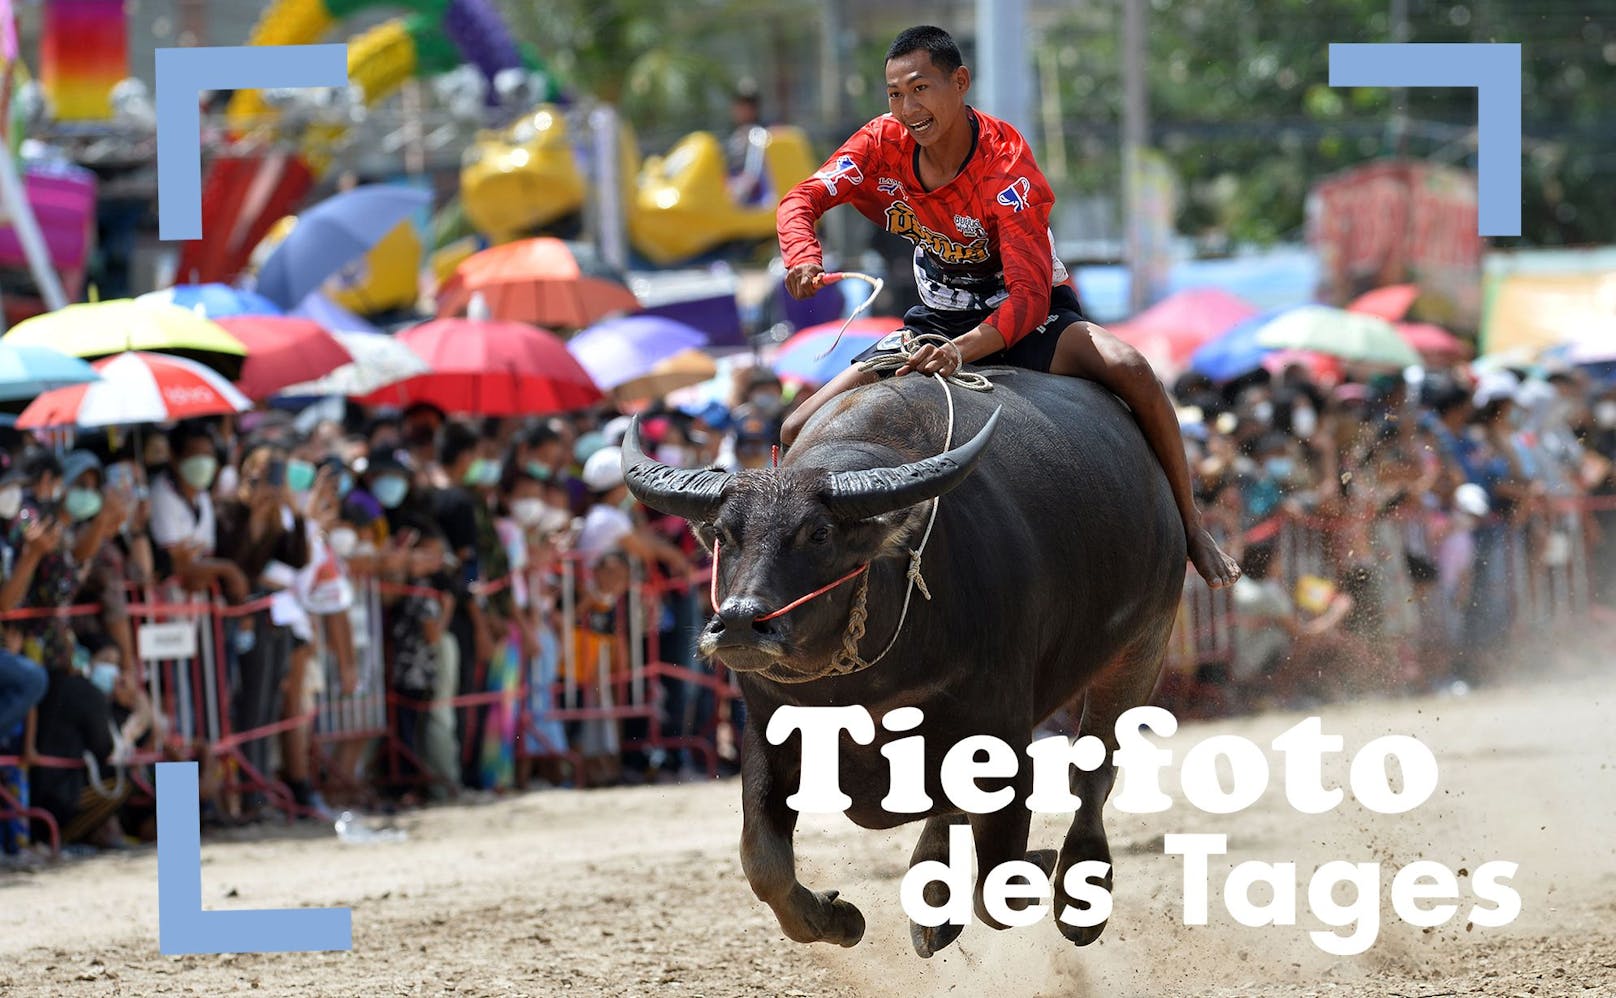 In Chonburi, Thailand, fand am 9. Oktober das traditonelle "Büffelrennen" statt. 